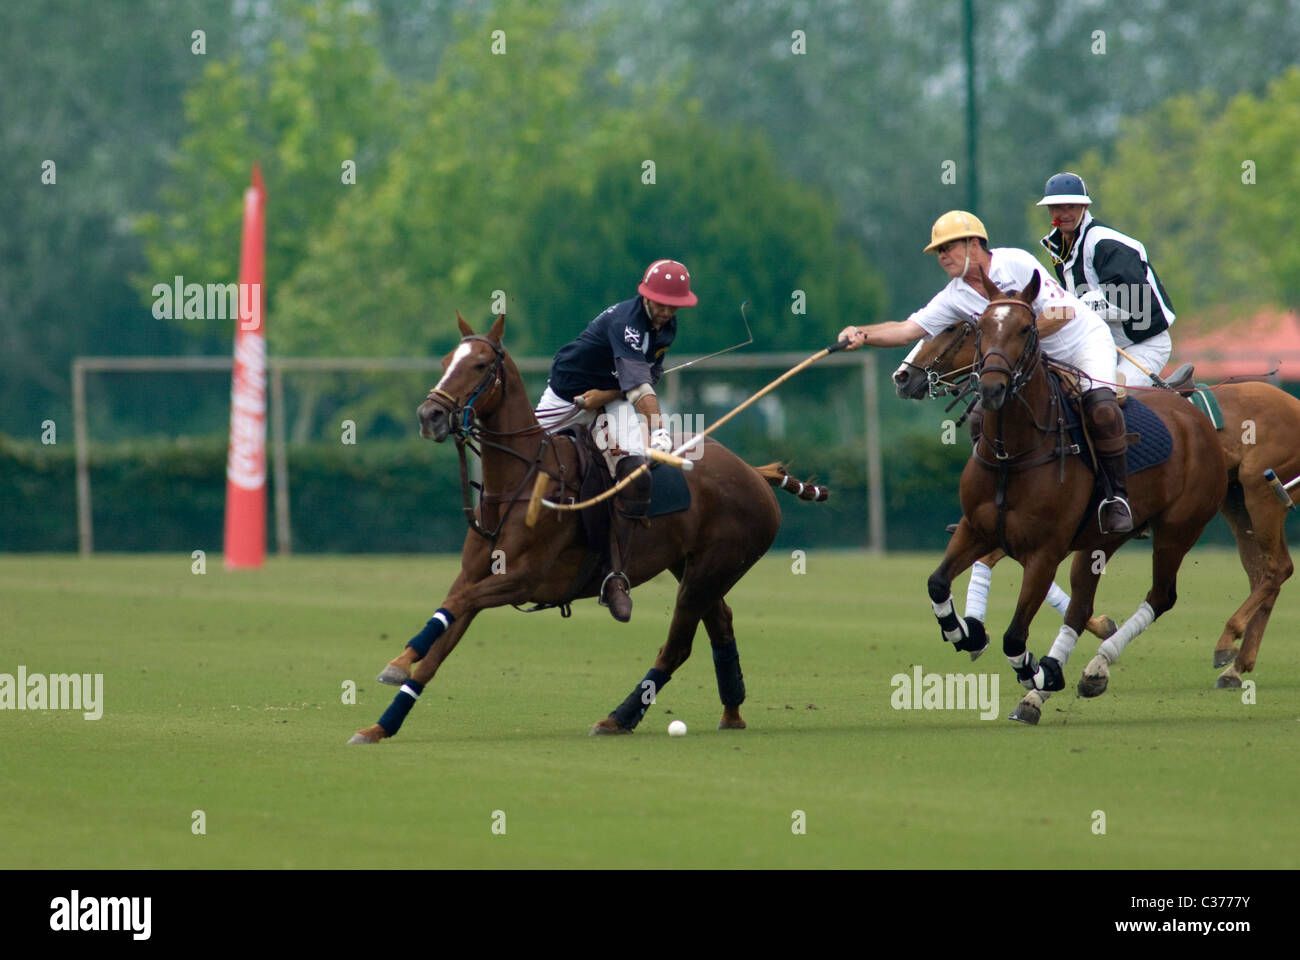 2 giocatori di Polo in azione con arbitro dietro Foto Stock